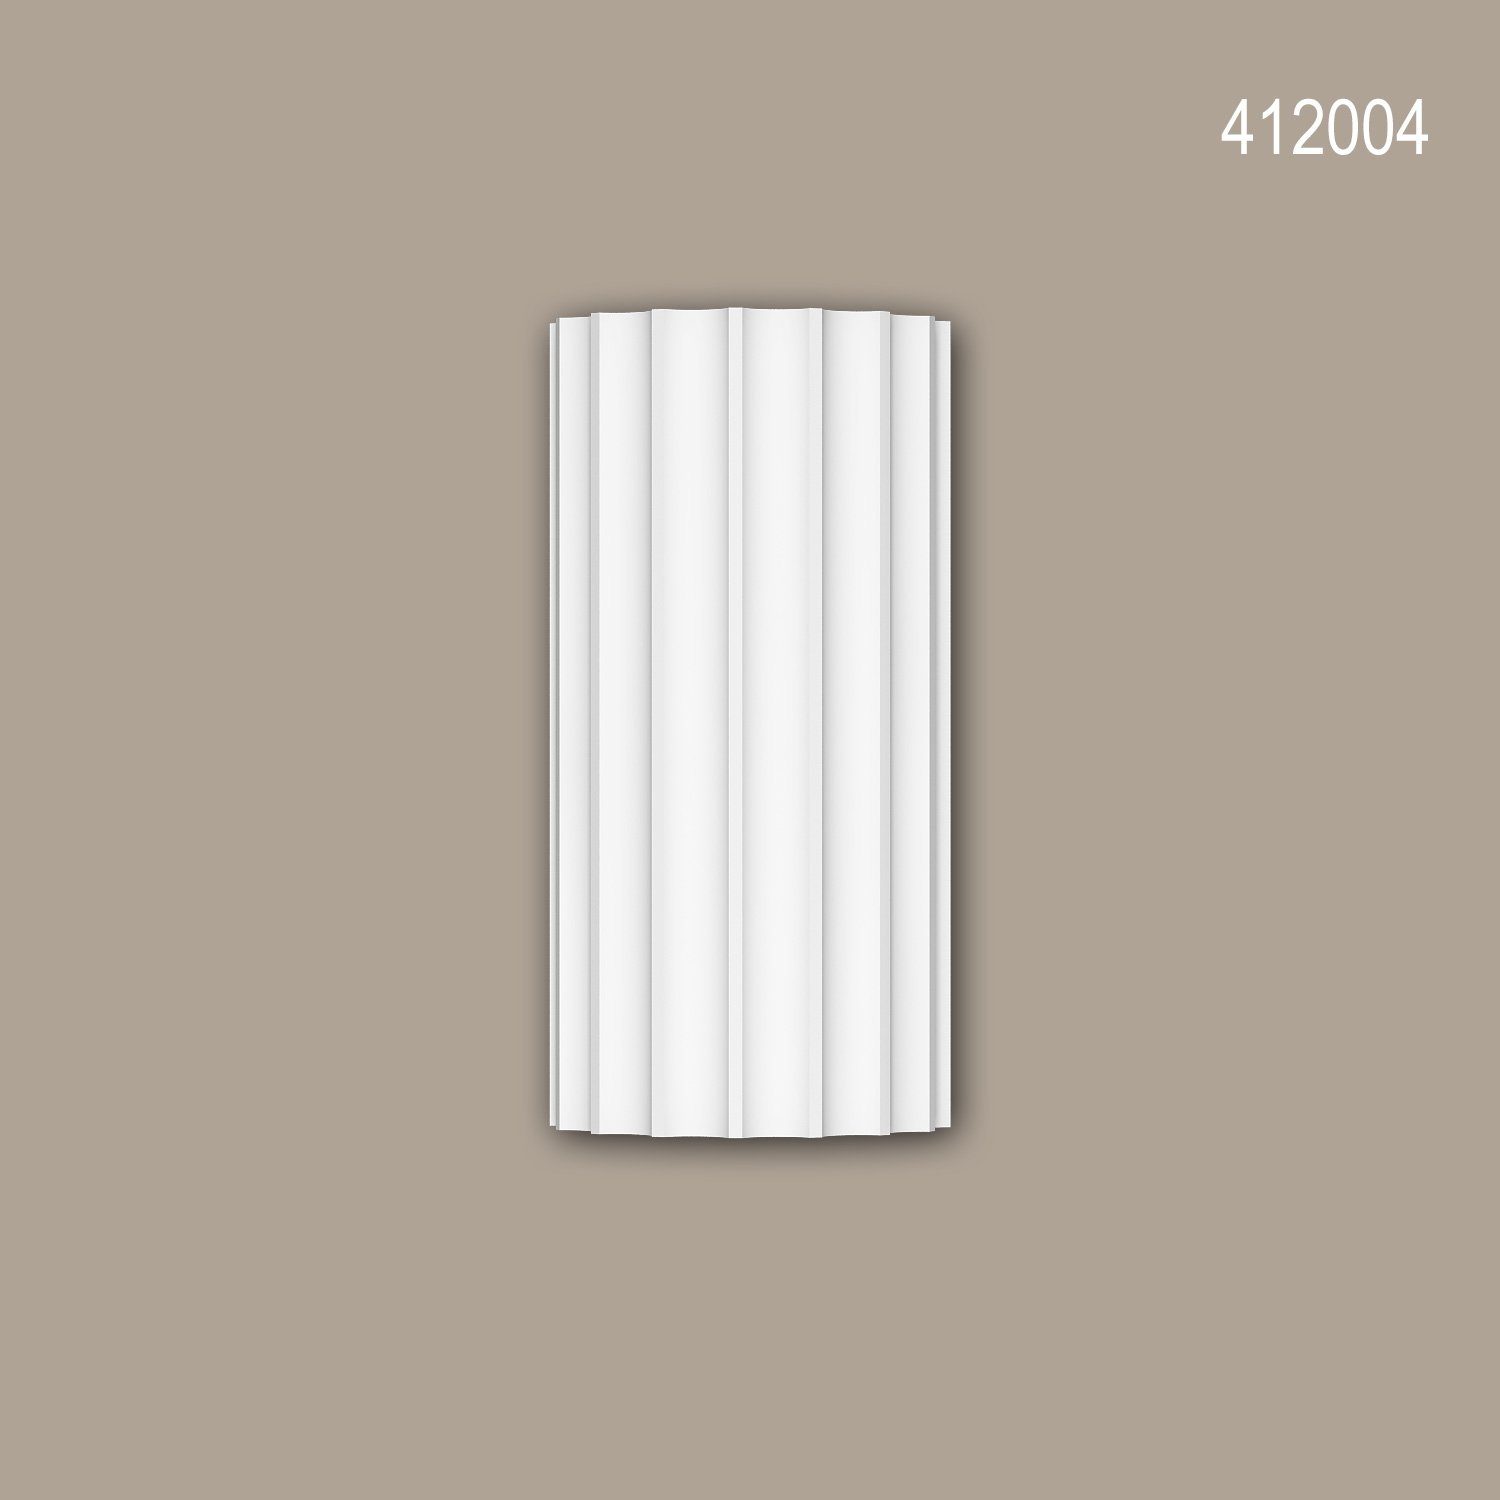 Profhome Wanddekoobjekt 412004 (Vollsäulen Segment, 1 St., Fassadenstuck, Säule, Zierelement, Außenstuck, Durchmesser 36,4 cm), weiß, vorgrundiert, für Fassadendekoration, Stil: Ionisch